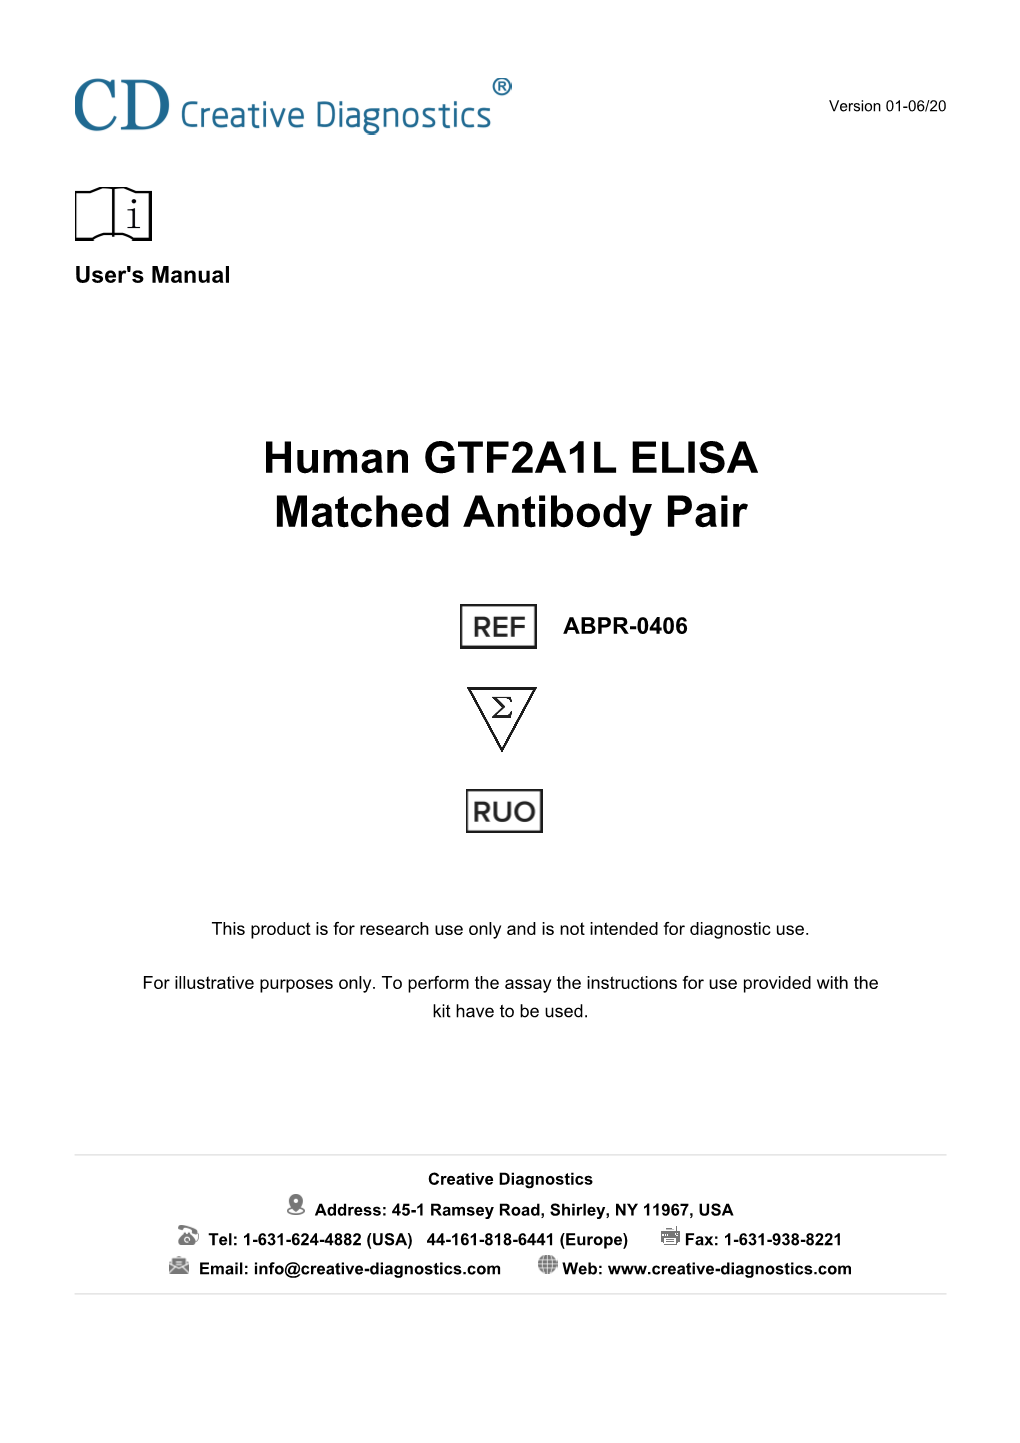 Human GTF2A1L ELISA Matched Antibody Pair